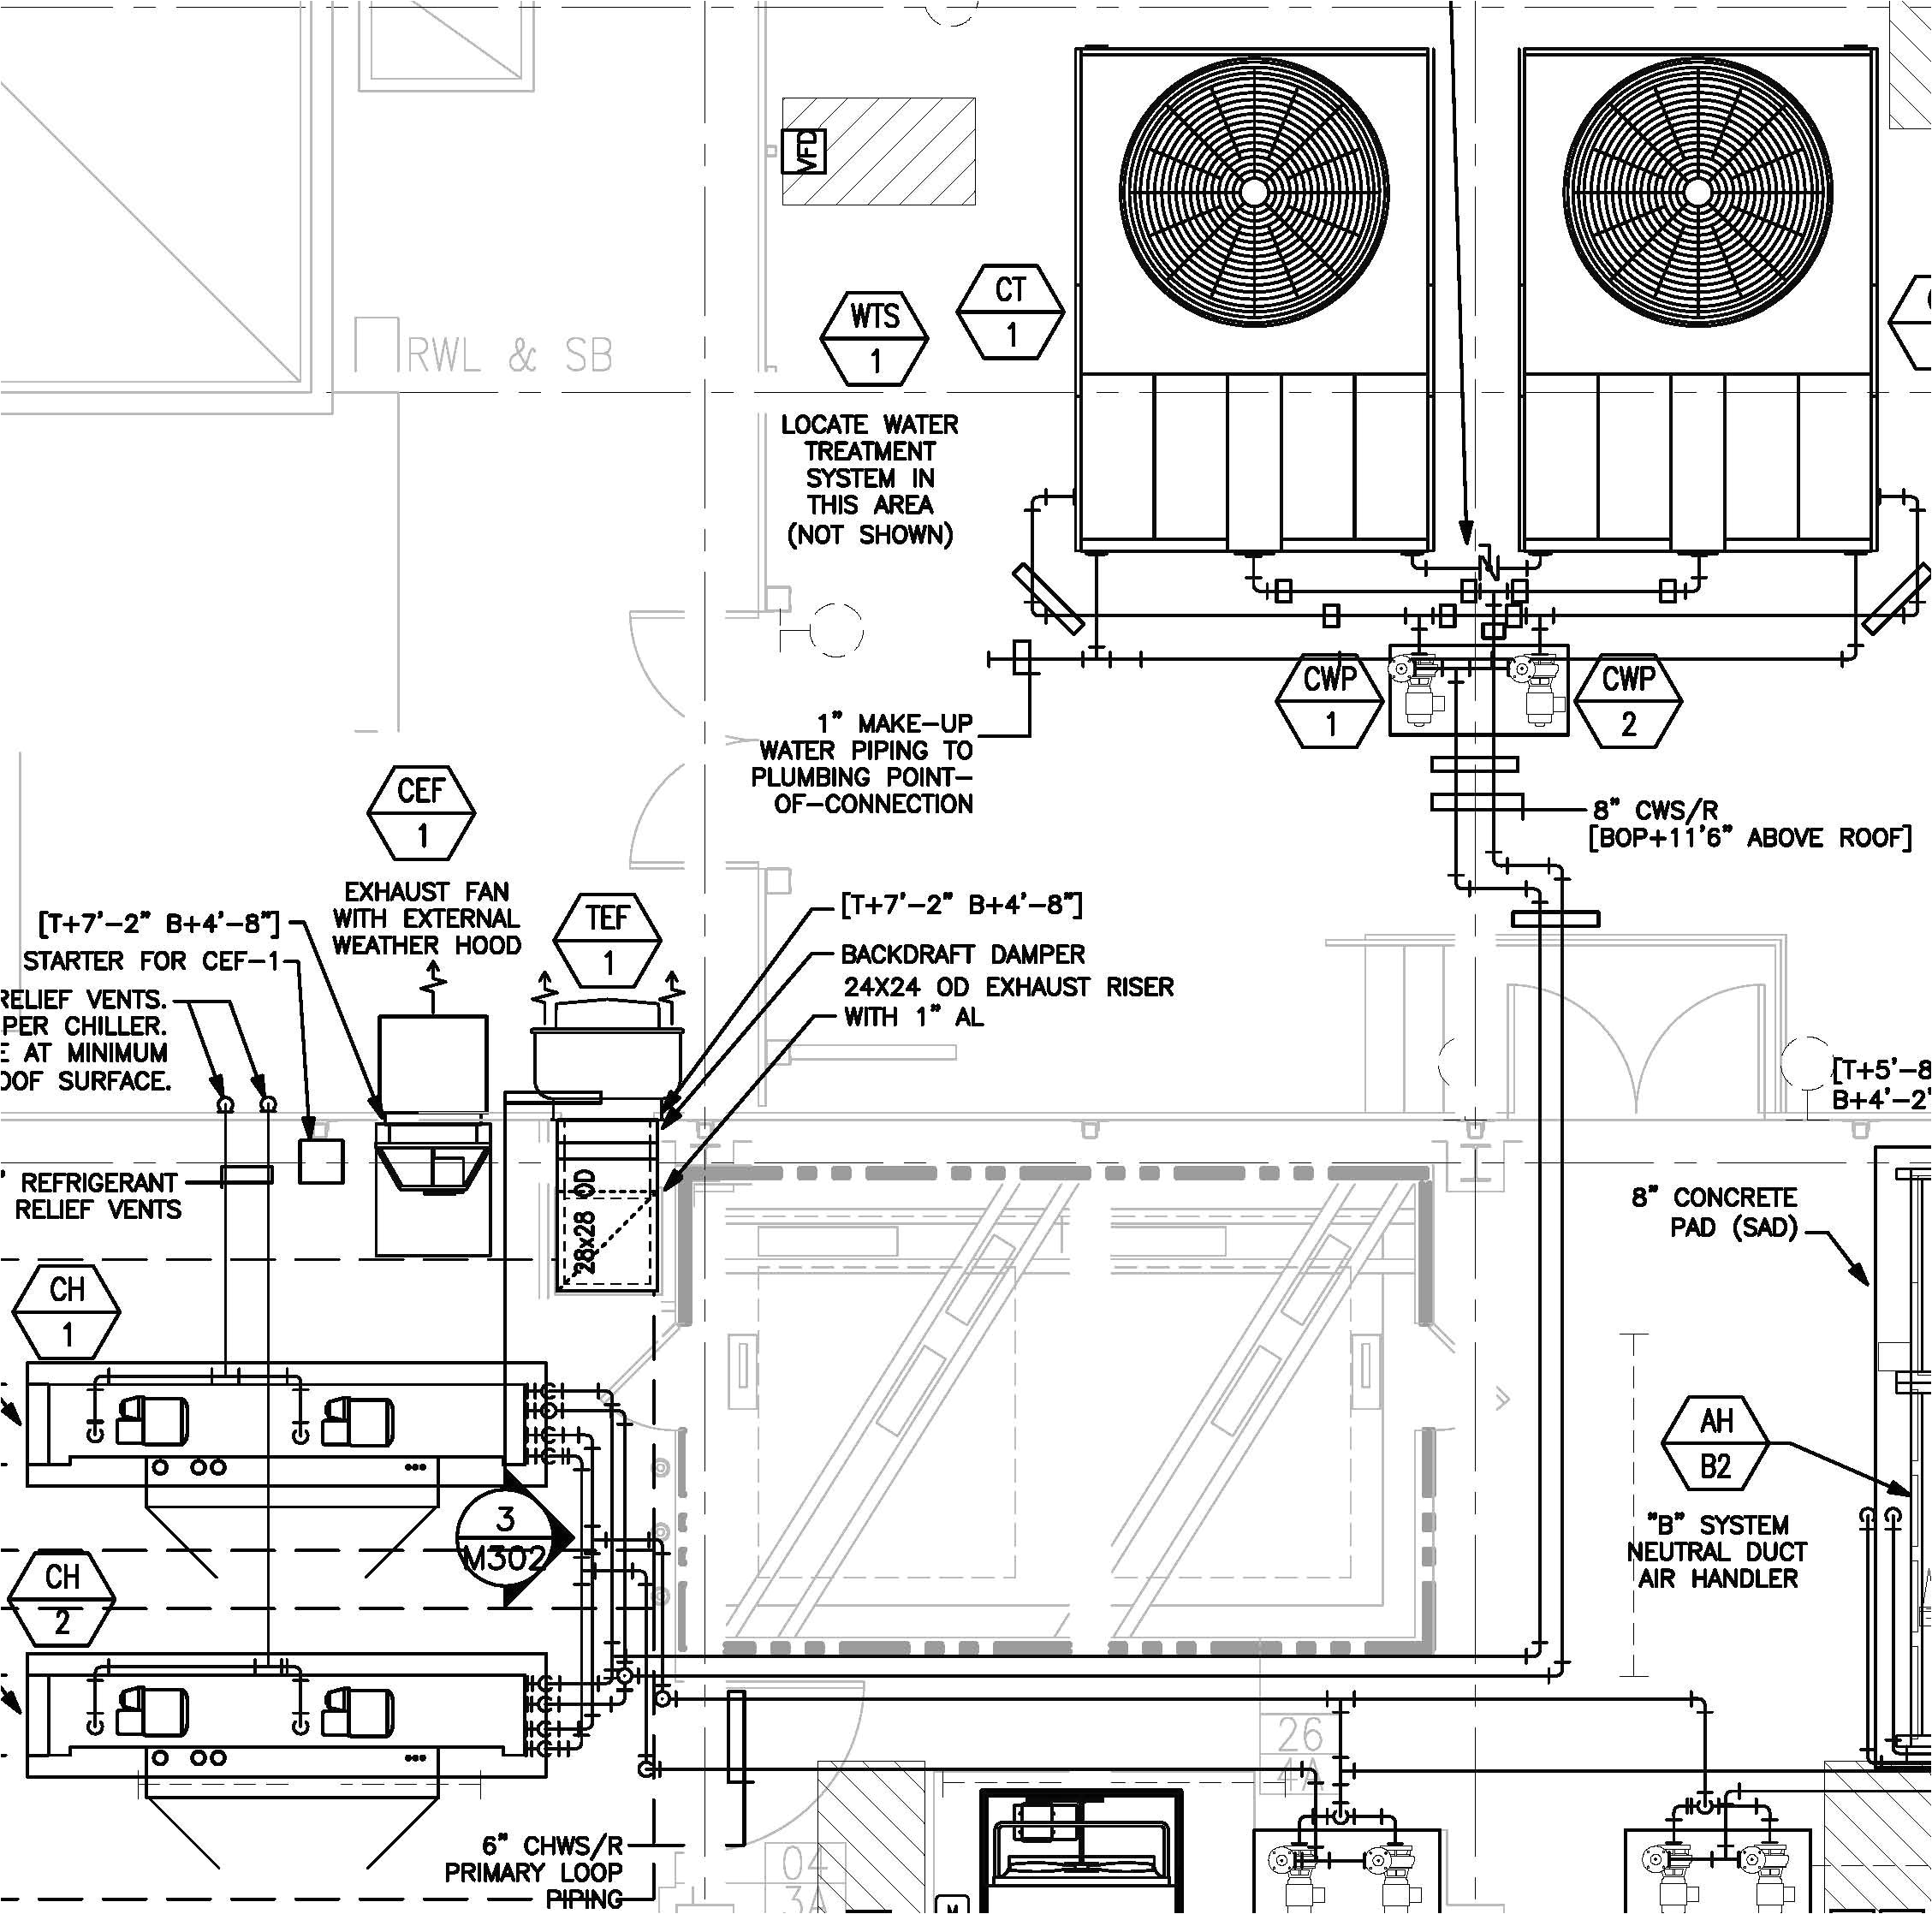 hx chiller wiring diagram wiring diagram showcarrier chiller wiring diagrams 12